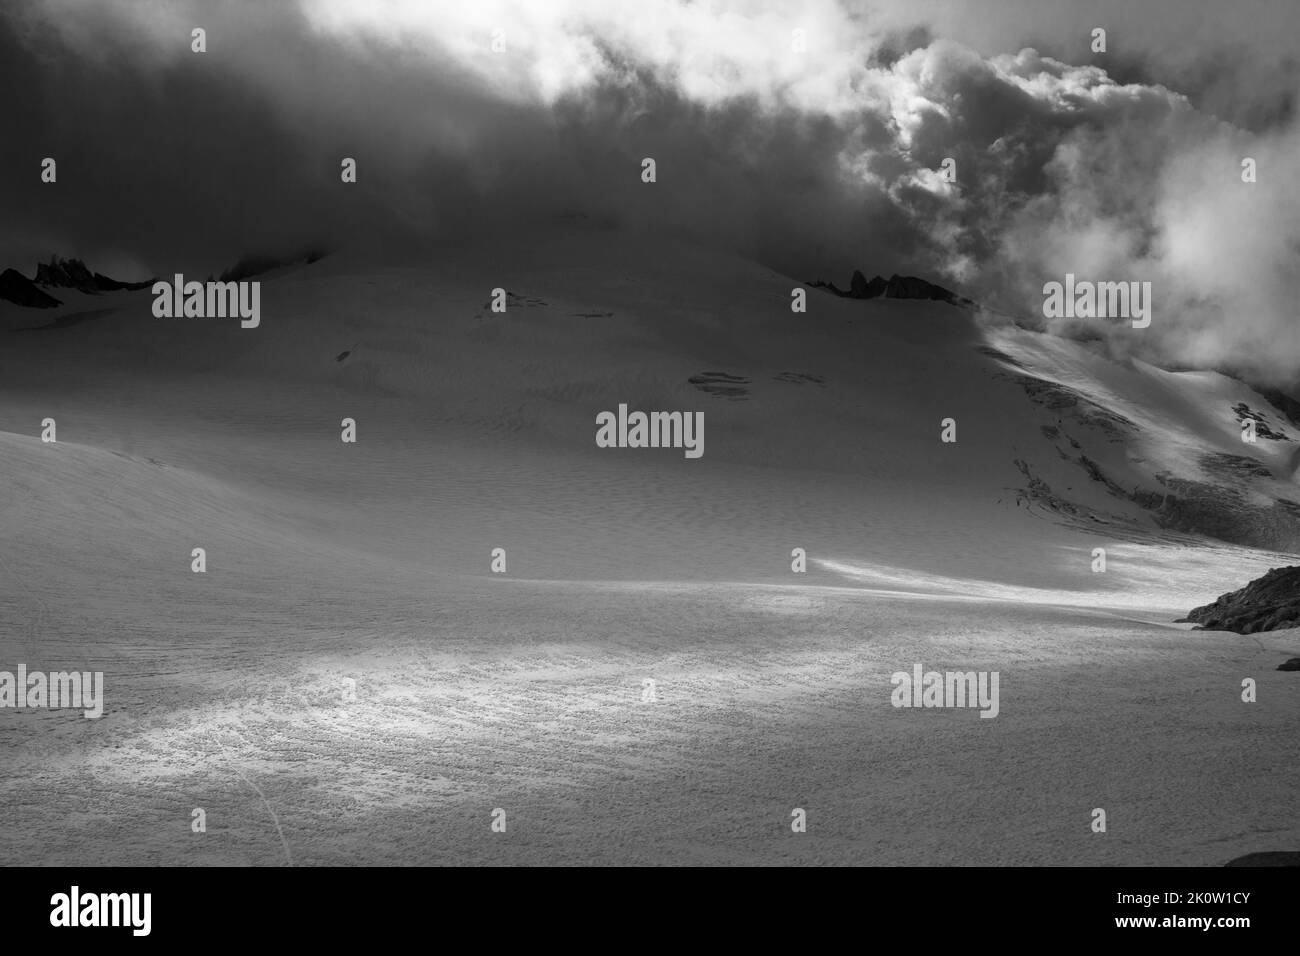 Eindrücke vom Orny-Gletscher in den Walliser Alpen Foto de stock